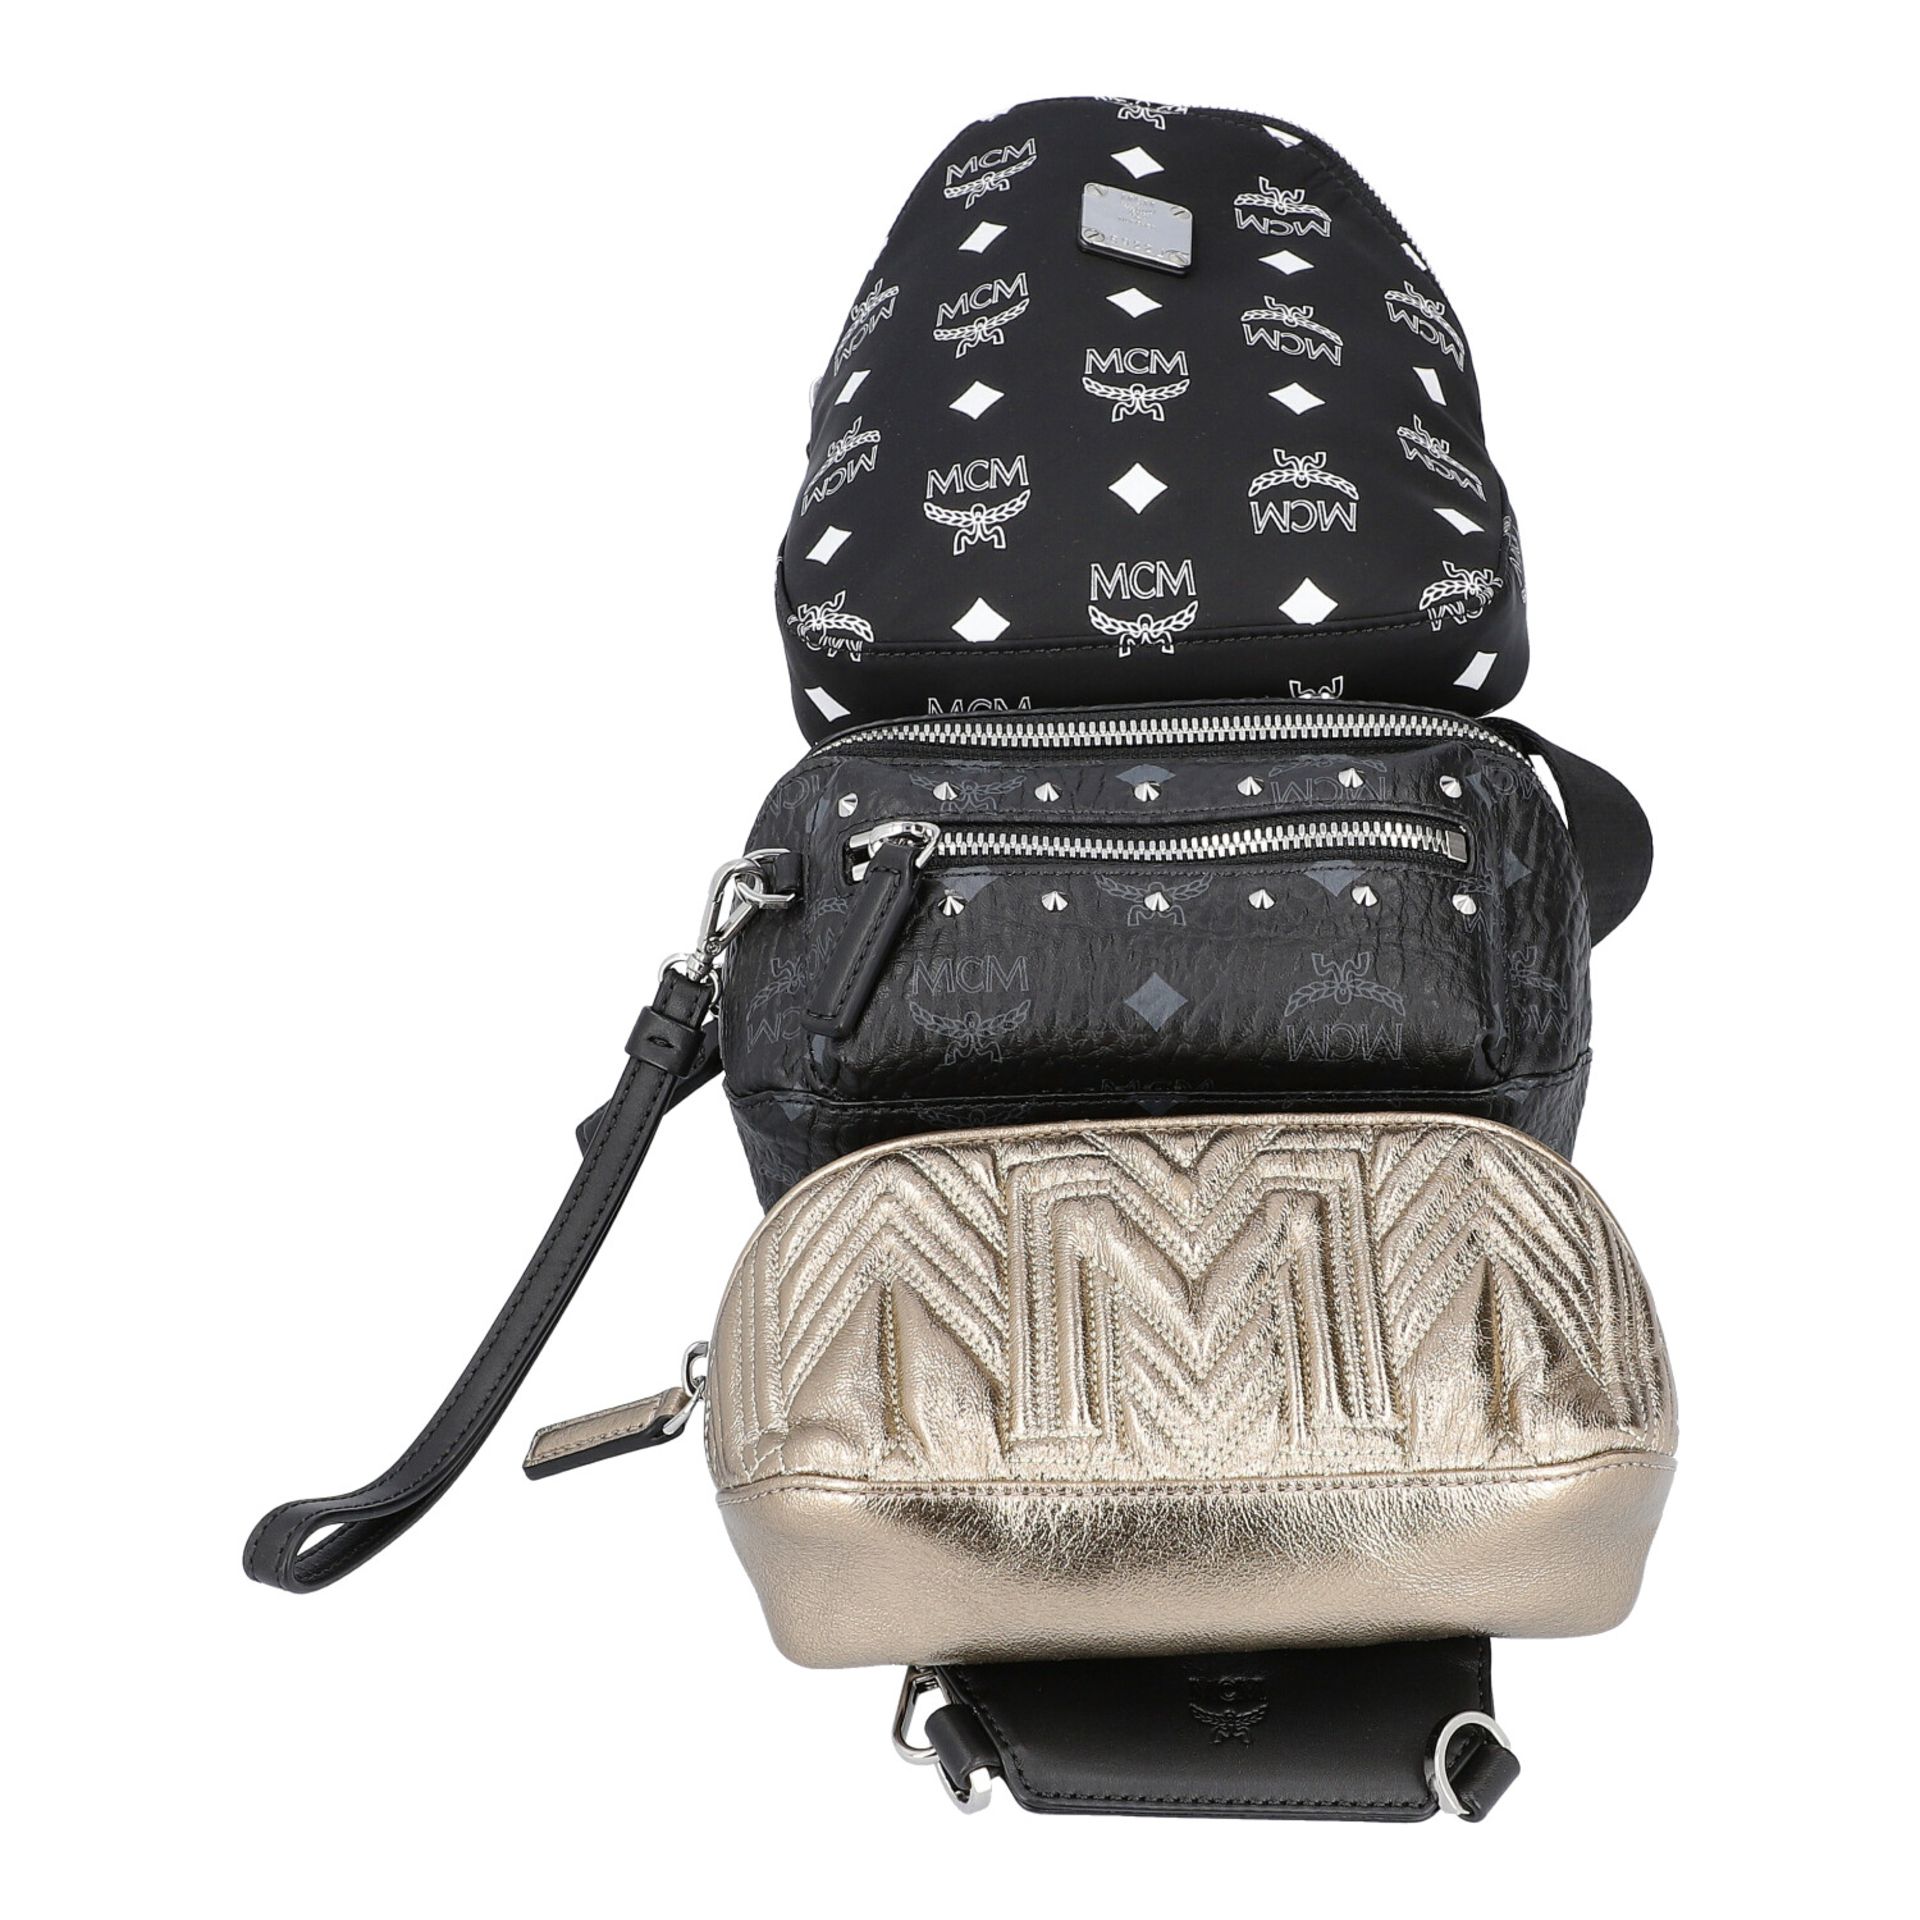 MCM Multi-Bag, akt. NP.: 995,-€. Dreifache Tasche bestehend aus drei einzelnen Model